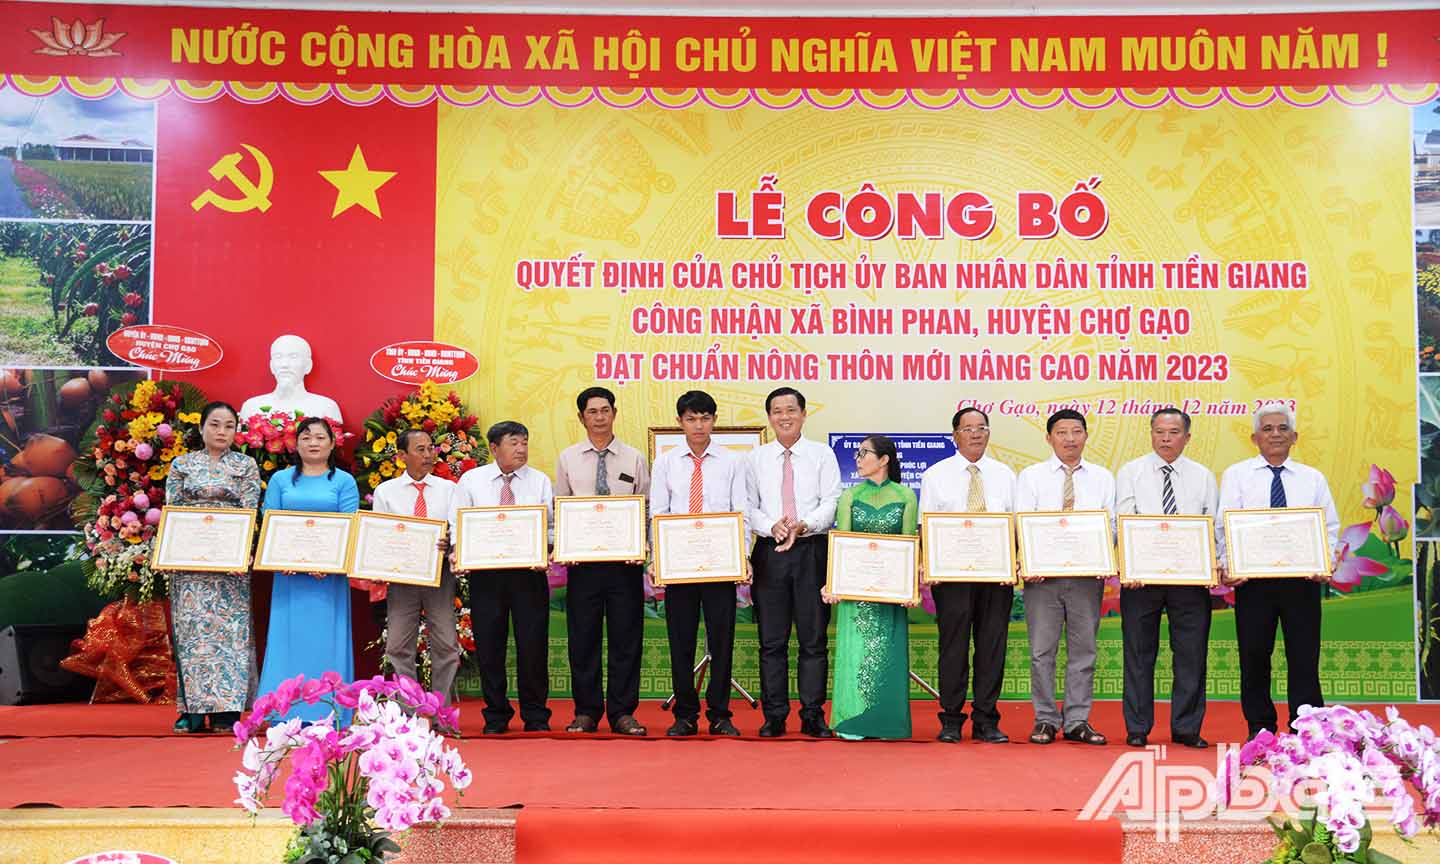 Dịp này, UBND tỉnh trao 11 bằng khen cho các cá nhân xuất sắc có thành tích trong xây dựng xã Bình Phan đạt chuẩn NTM nâng cao.